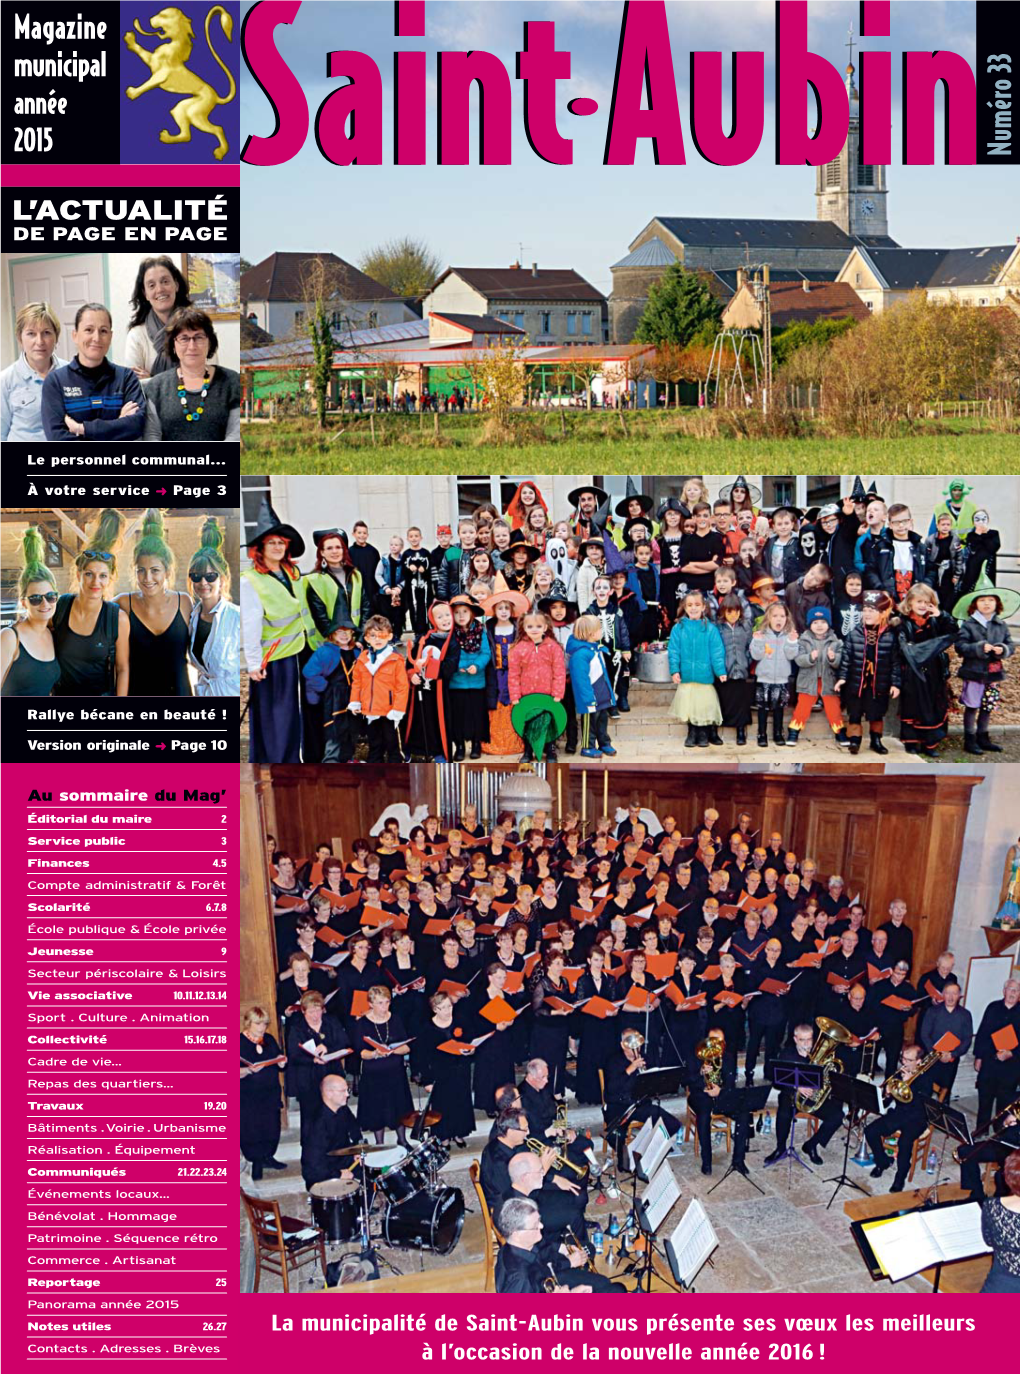 Magazine Municipal Année 2015 Ssaintaint Aubinaubin 33 Numéro L’ACTUALITÉ DE PAGE EN PAGE